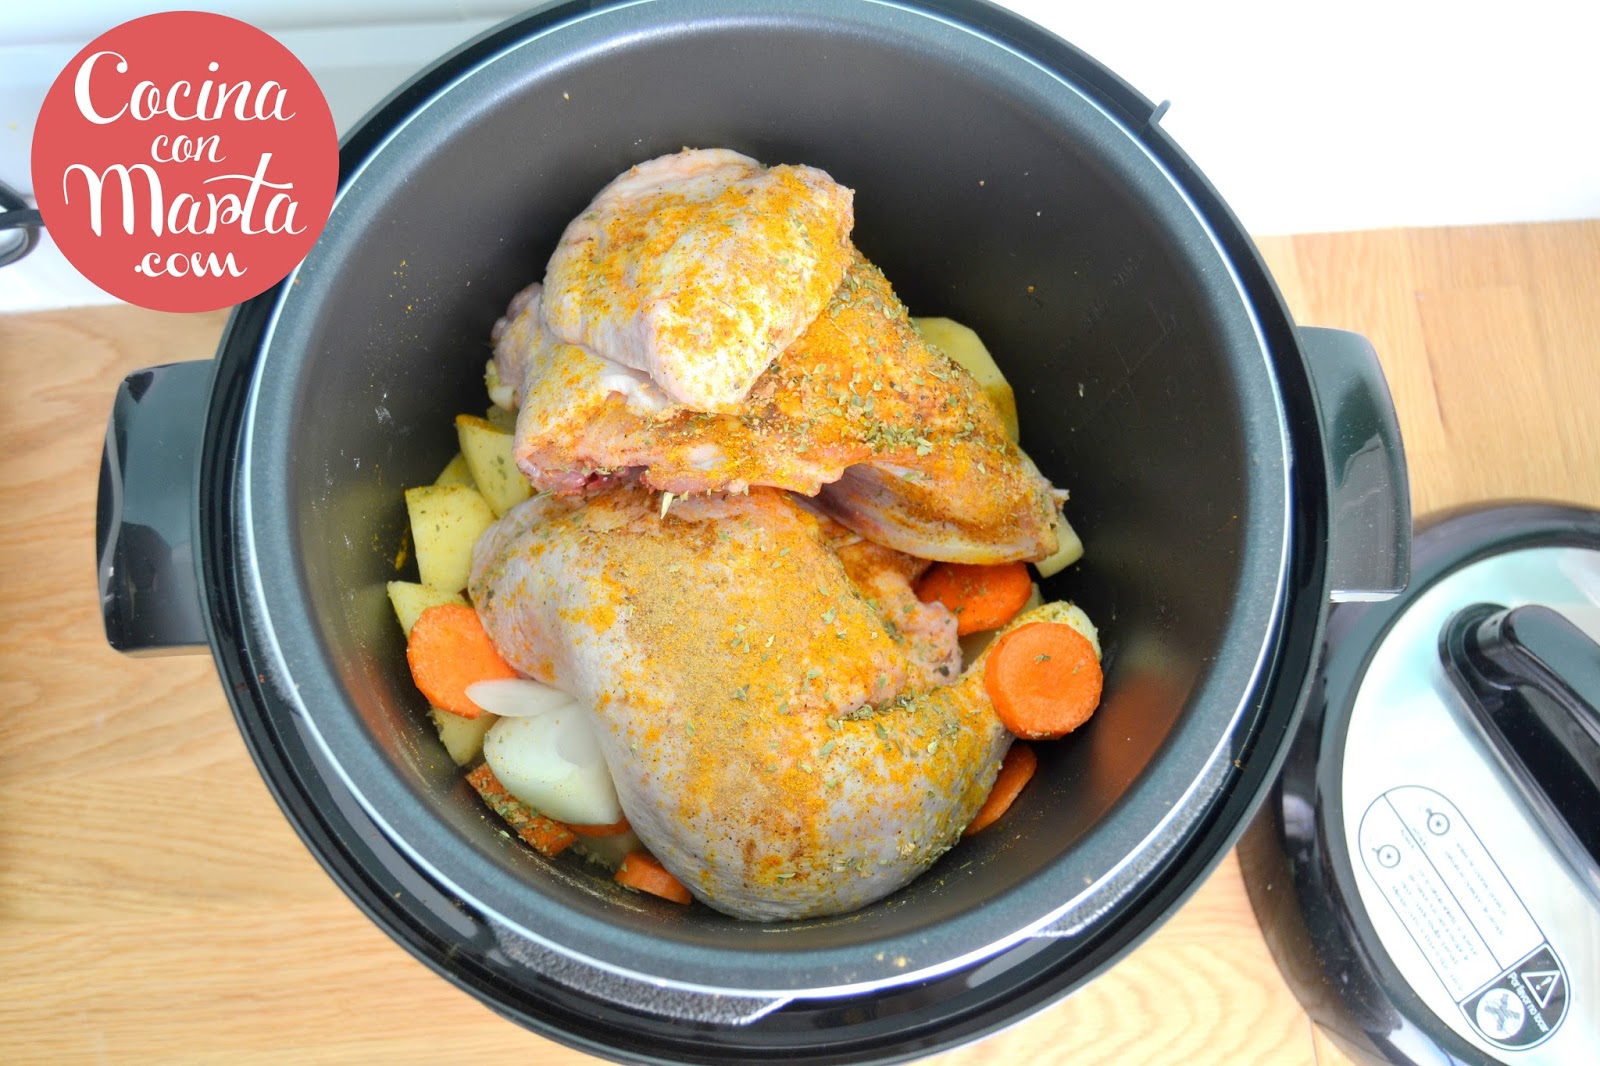 Receta casera de pollo asado en olla GM, con verduras, patatas y zanahorias. Fácil, rápido y sencillo.